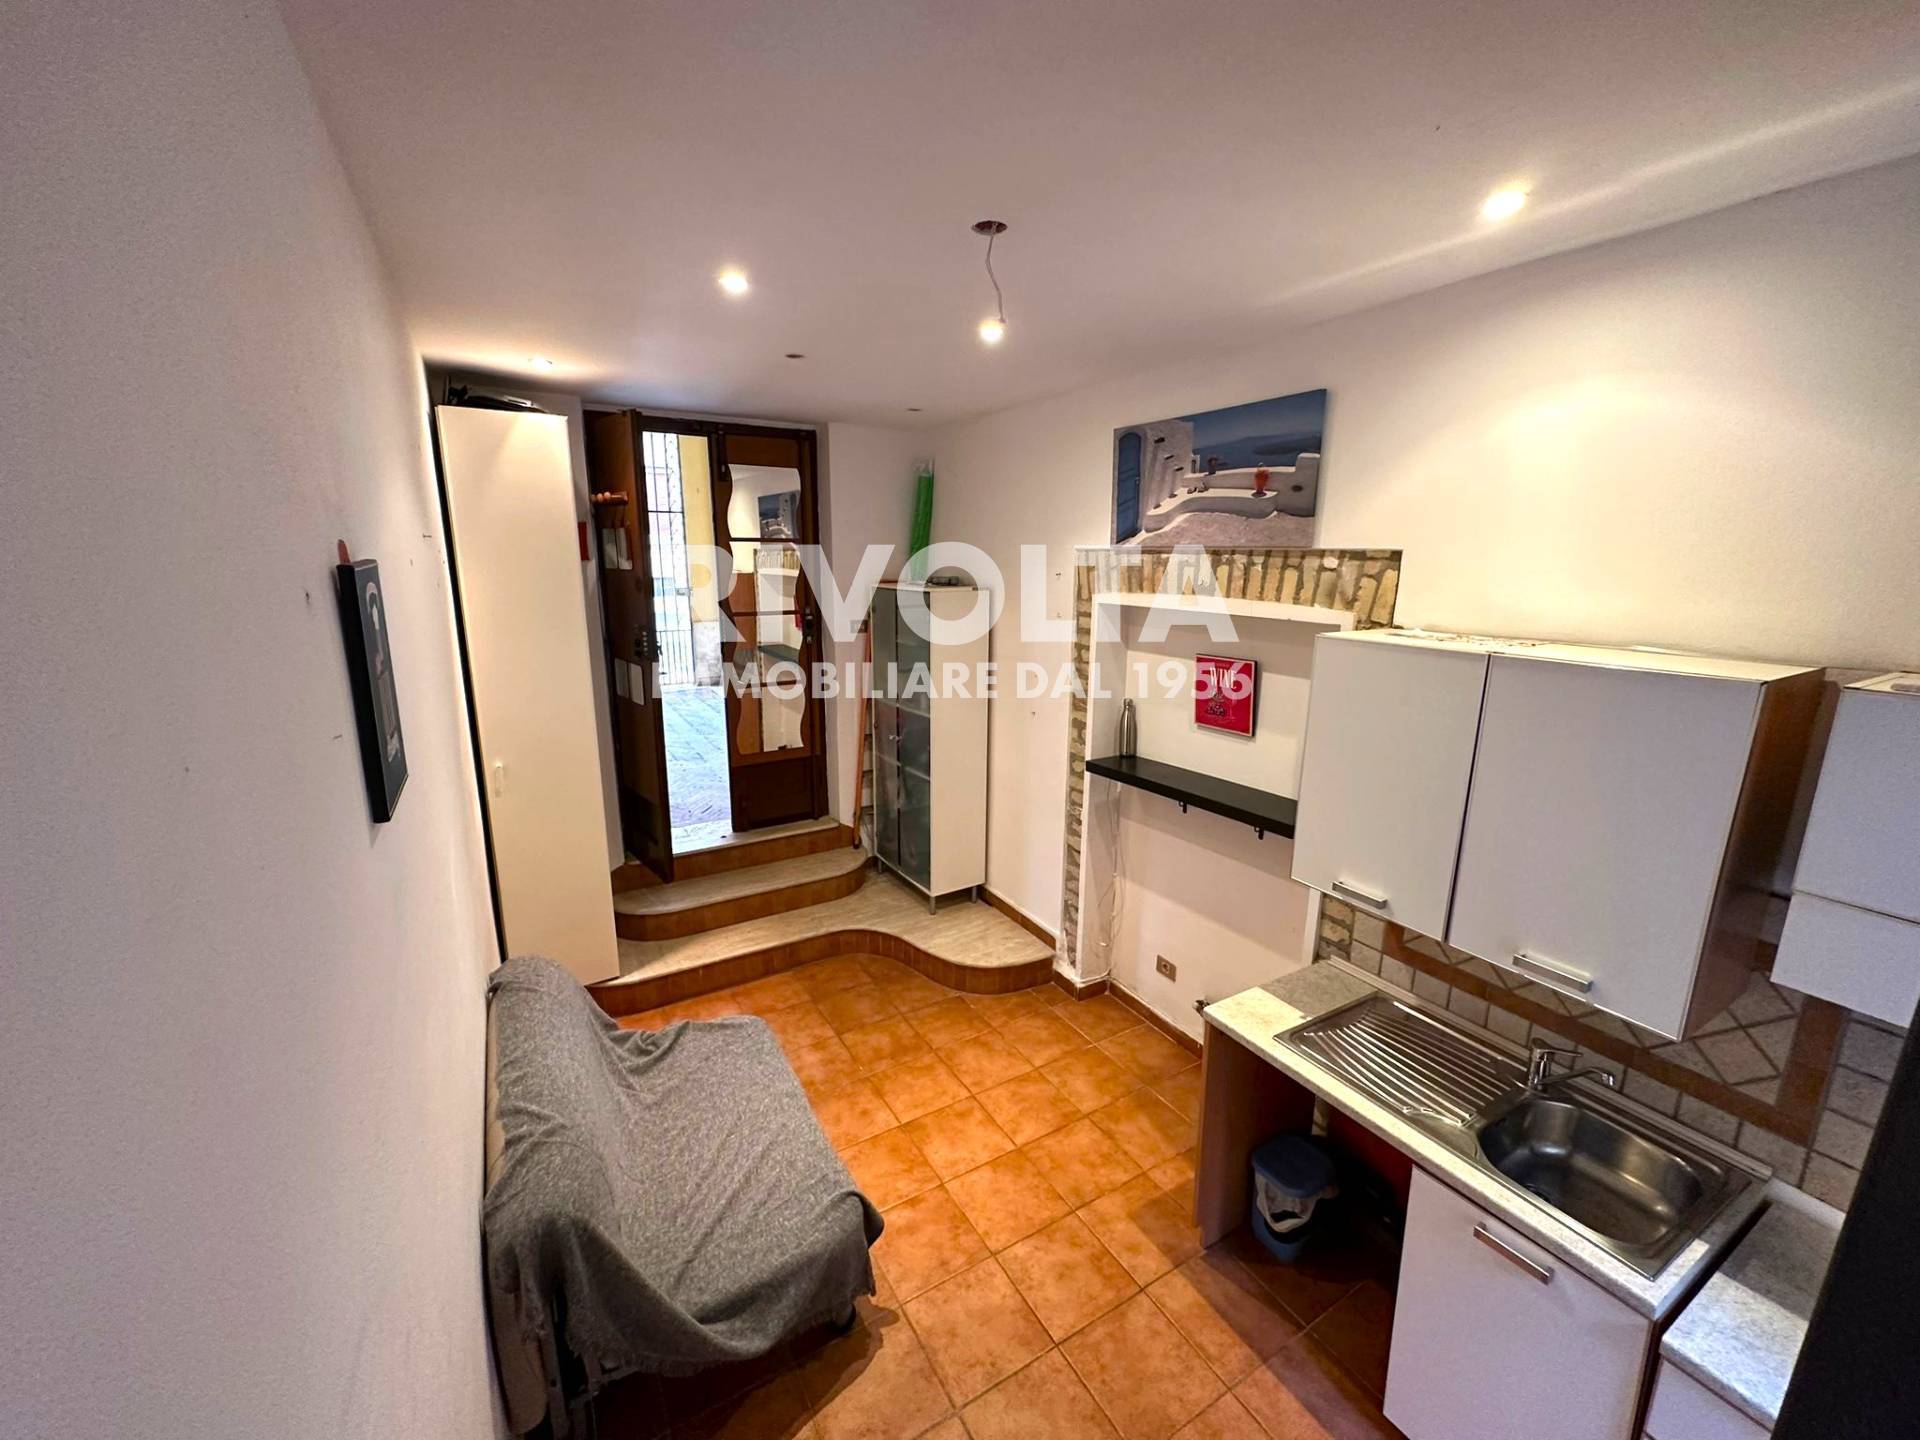 Appartamento in vendita a Roma, 2 locali, zona Zona: 2 . Flaminio, Parioli, Pinciano, Villa Borghese, prezzo € 152.000 | CambioCasa.it